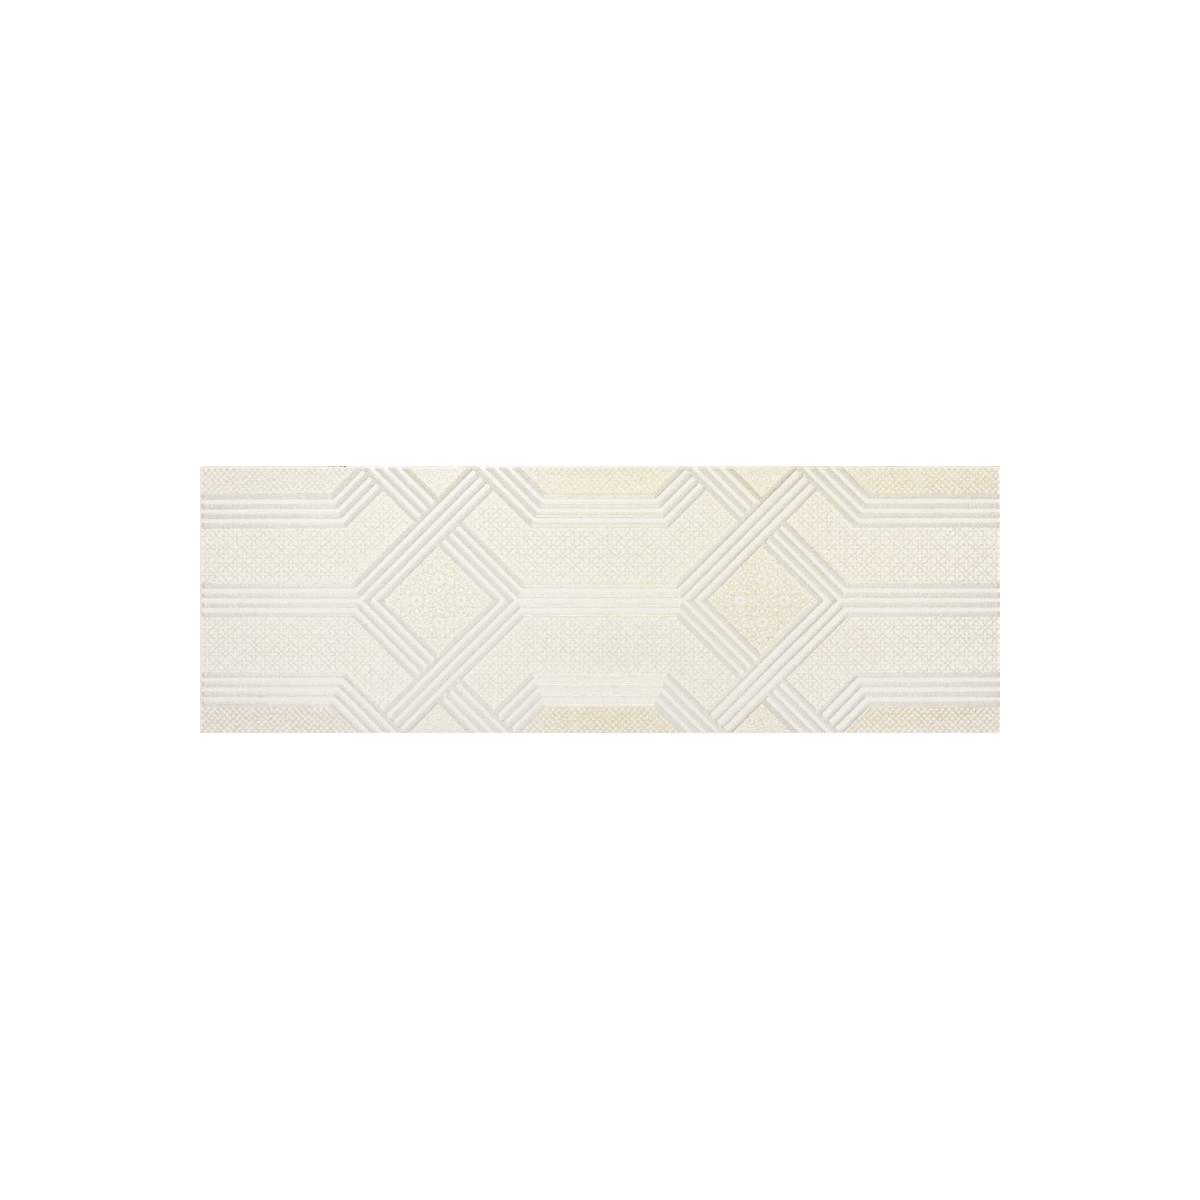 9523 Almond Soft (caja) - Colección 9523 - Marca Porcelanite